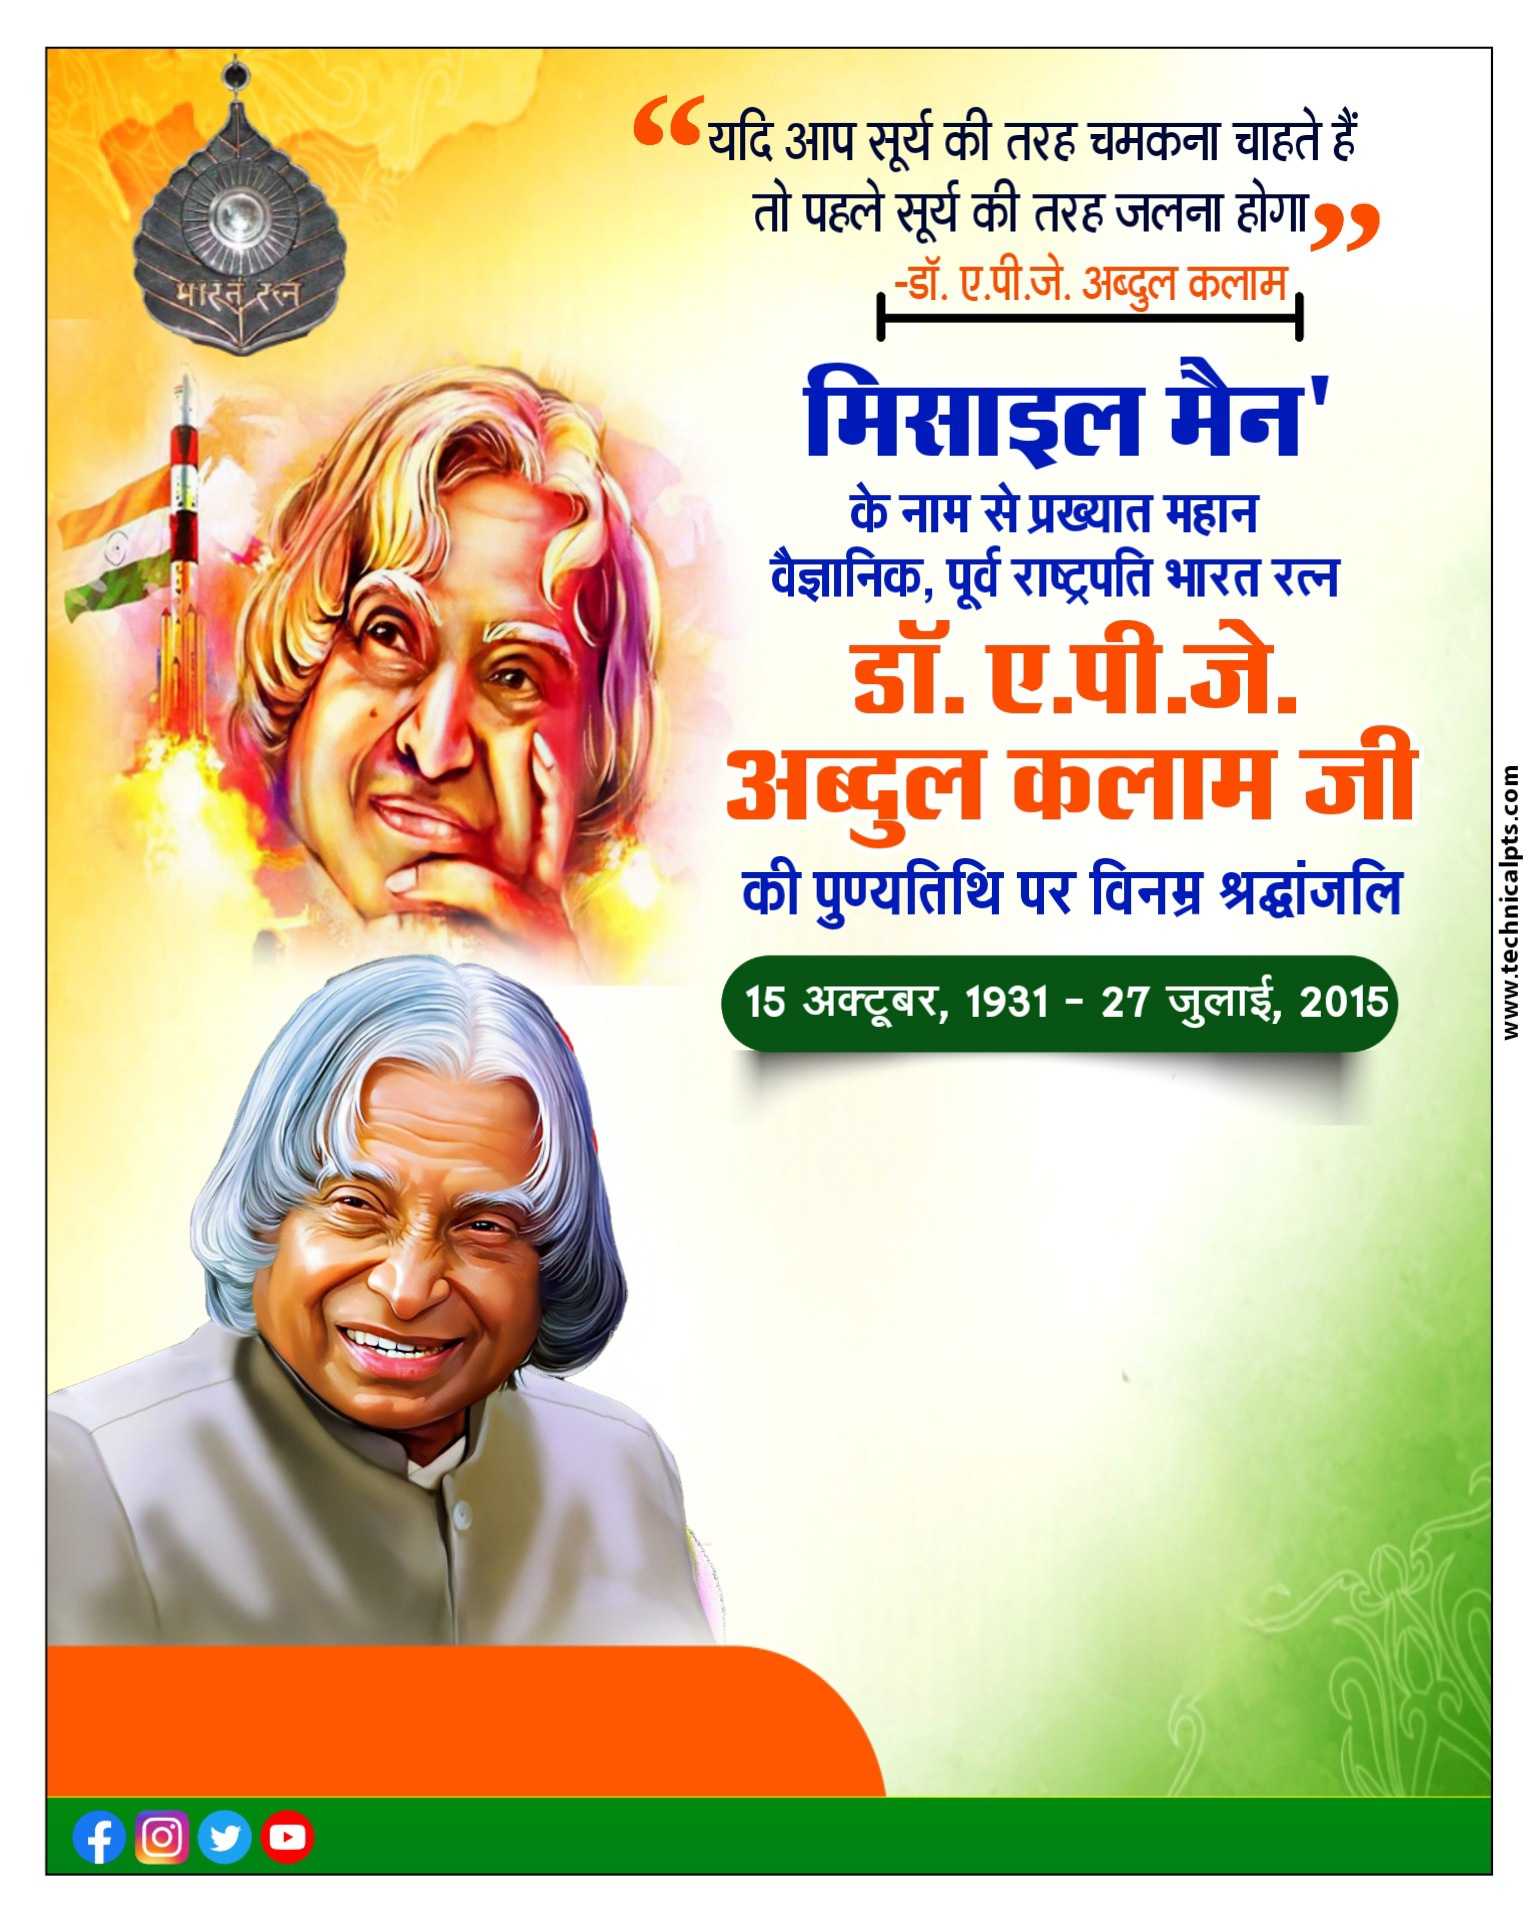 Abdul Kalam punyatithi poster plp file| APJ Abdul Kalam punyatithi banner editing | APJ Abdul Kalam punyatithi ka poster